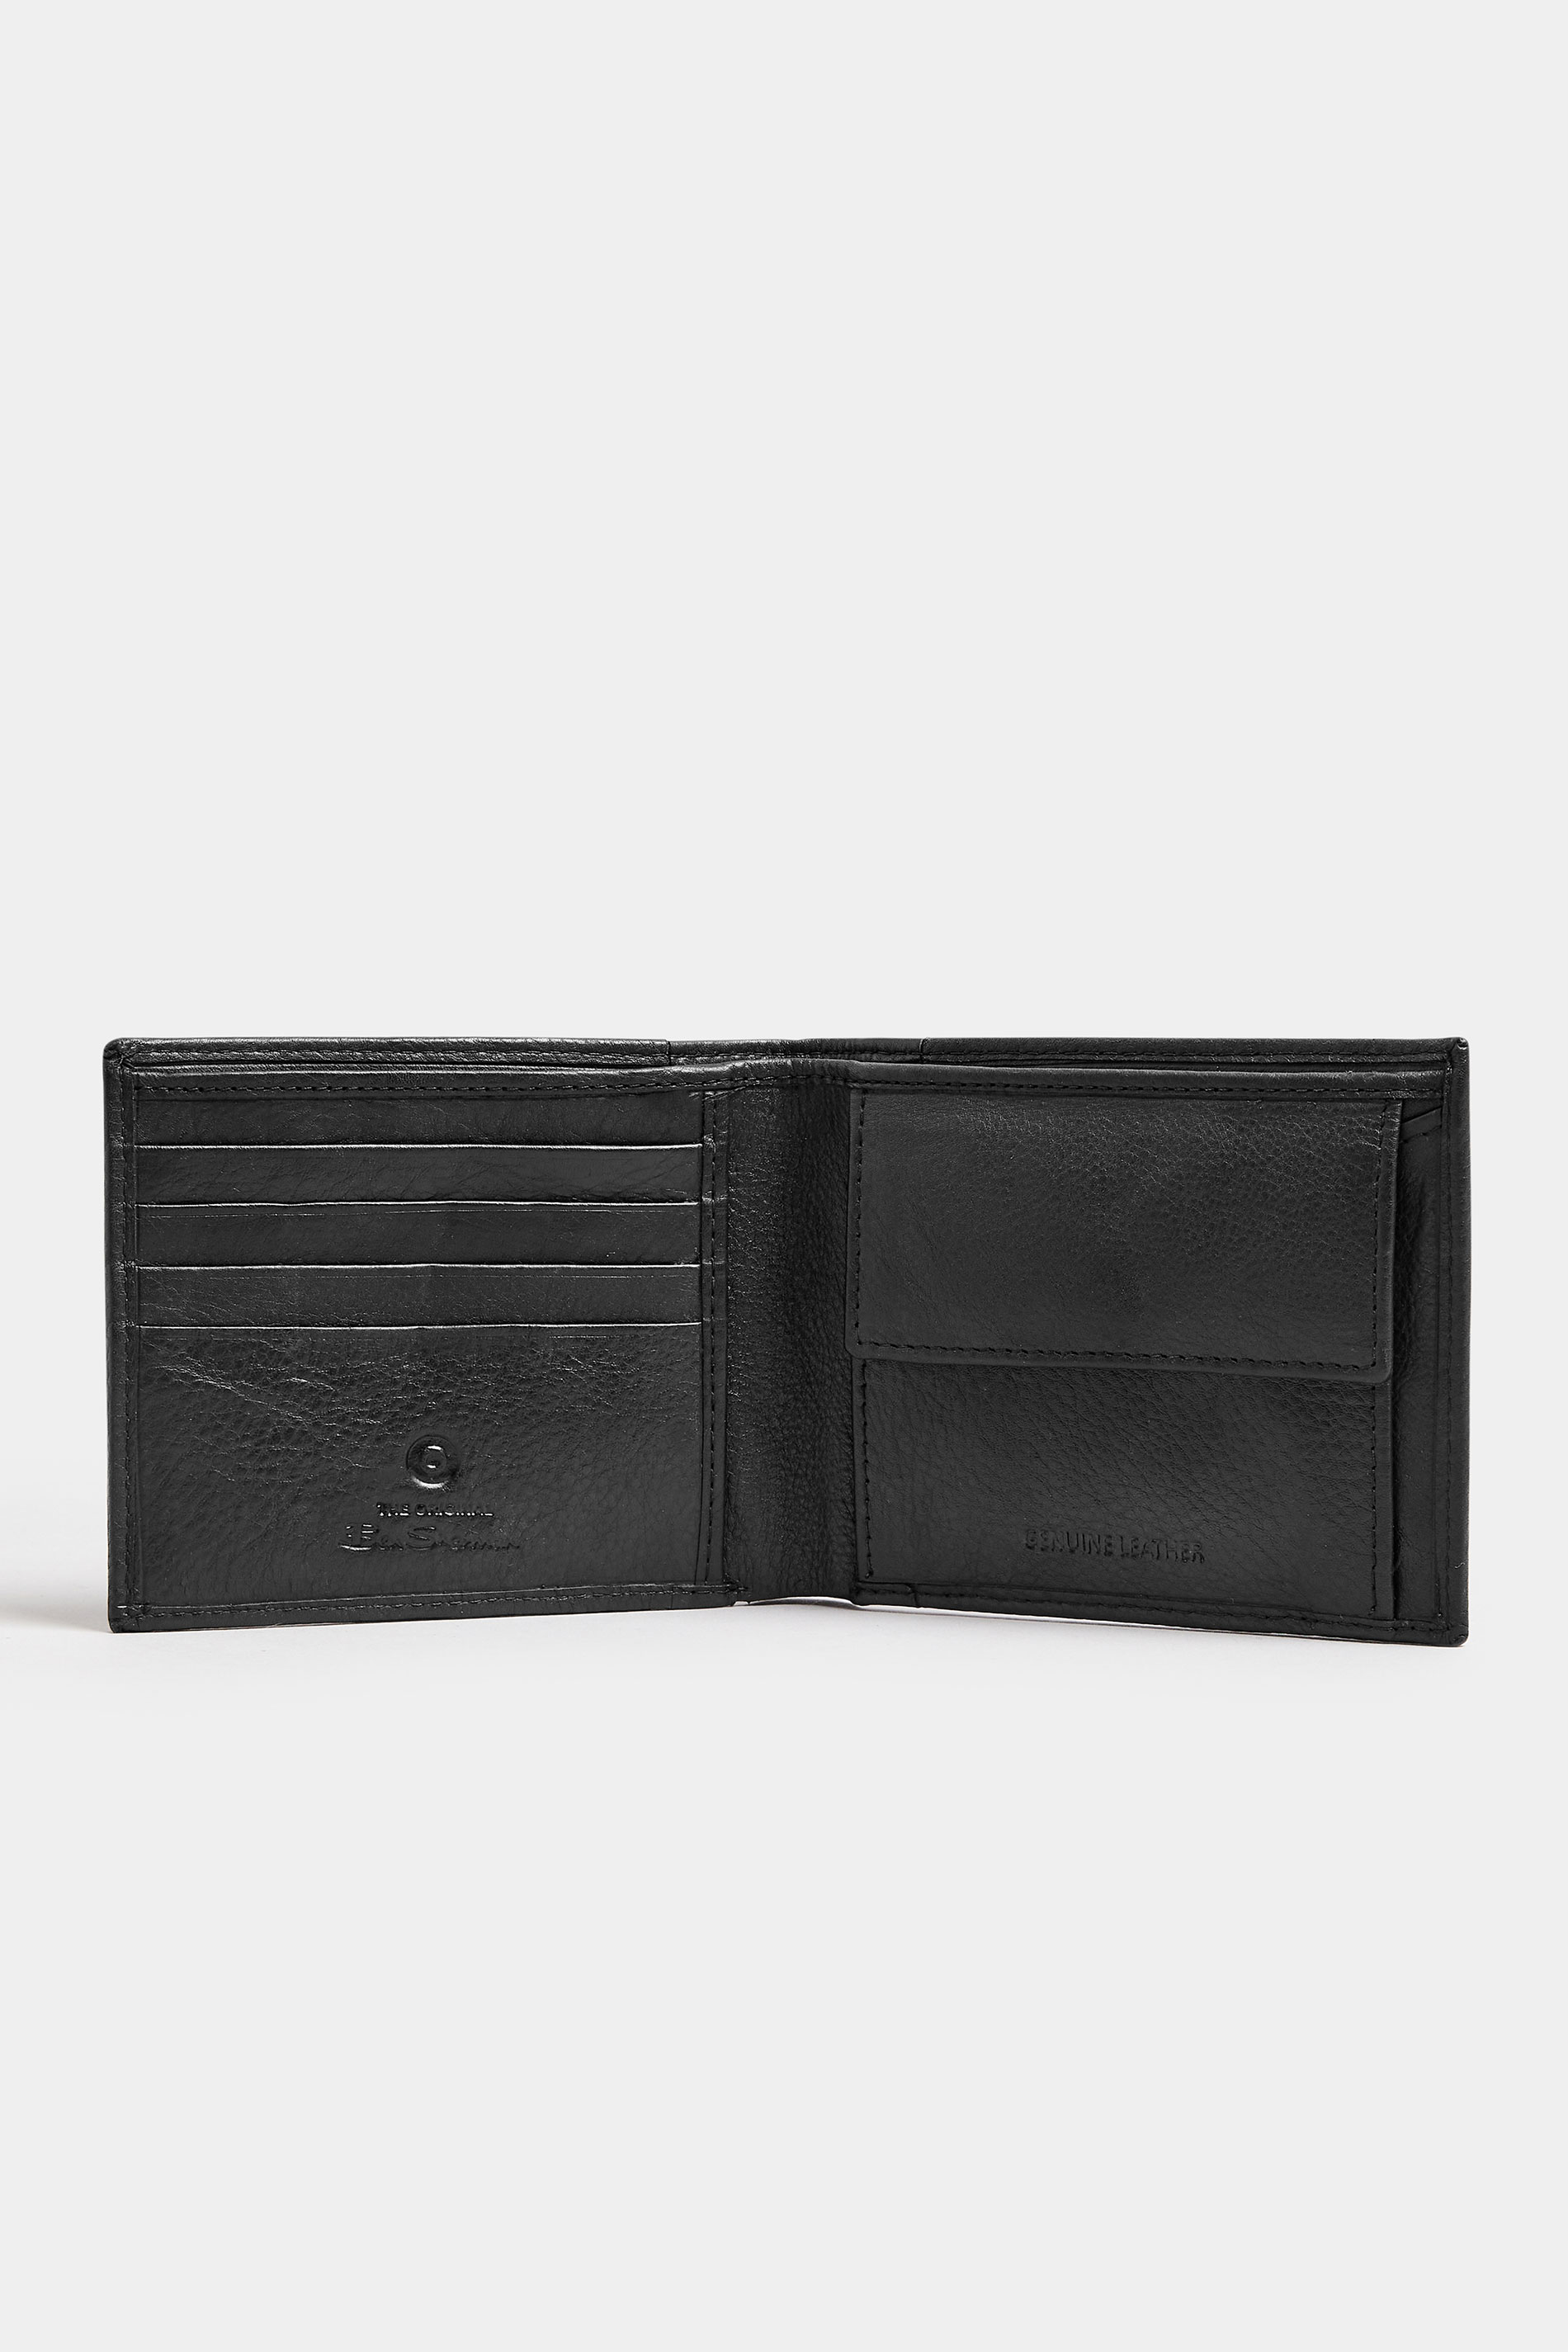 BEN SHERMAN Black Leather Bi-Fold Wallet 2